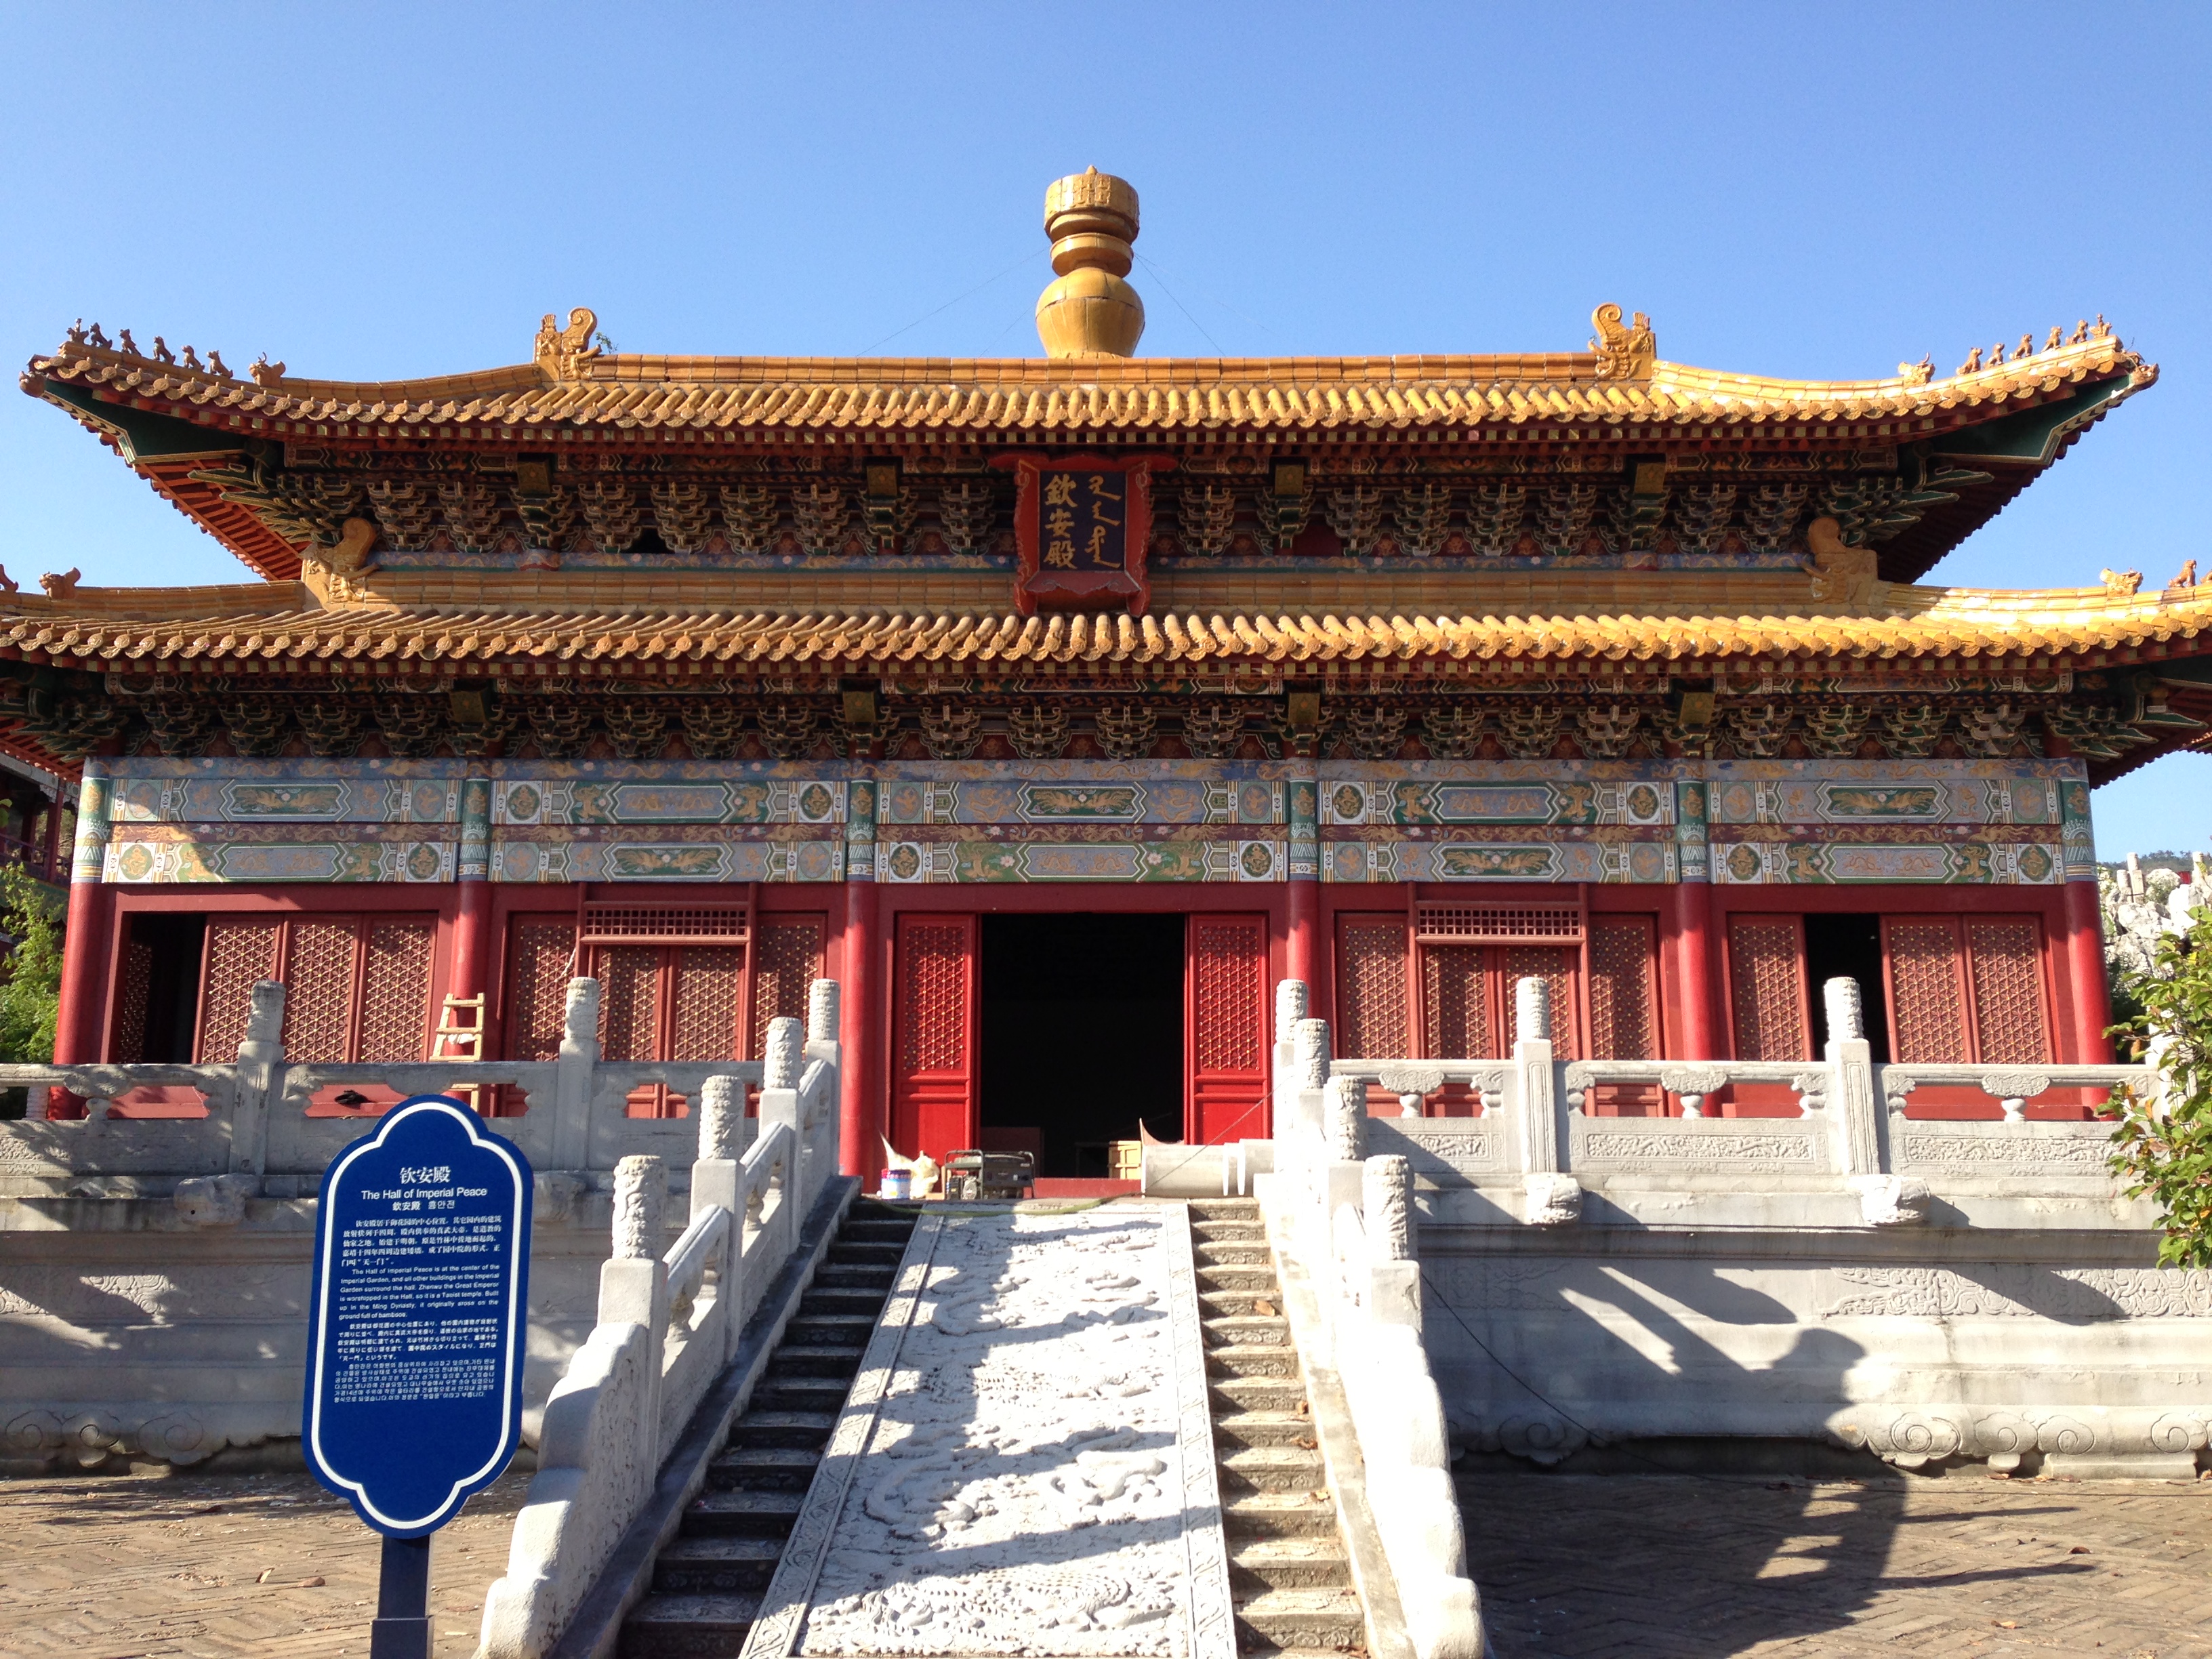 我们到了明清宫苑,这里再现"北京故宫"原貌,有太和殿,金水桥,钦安殿